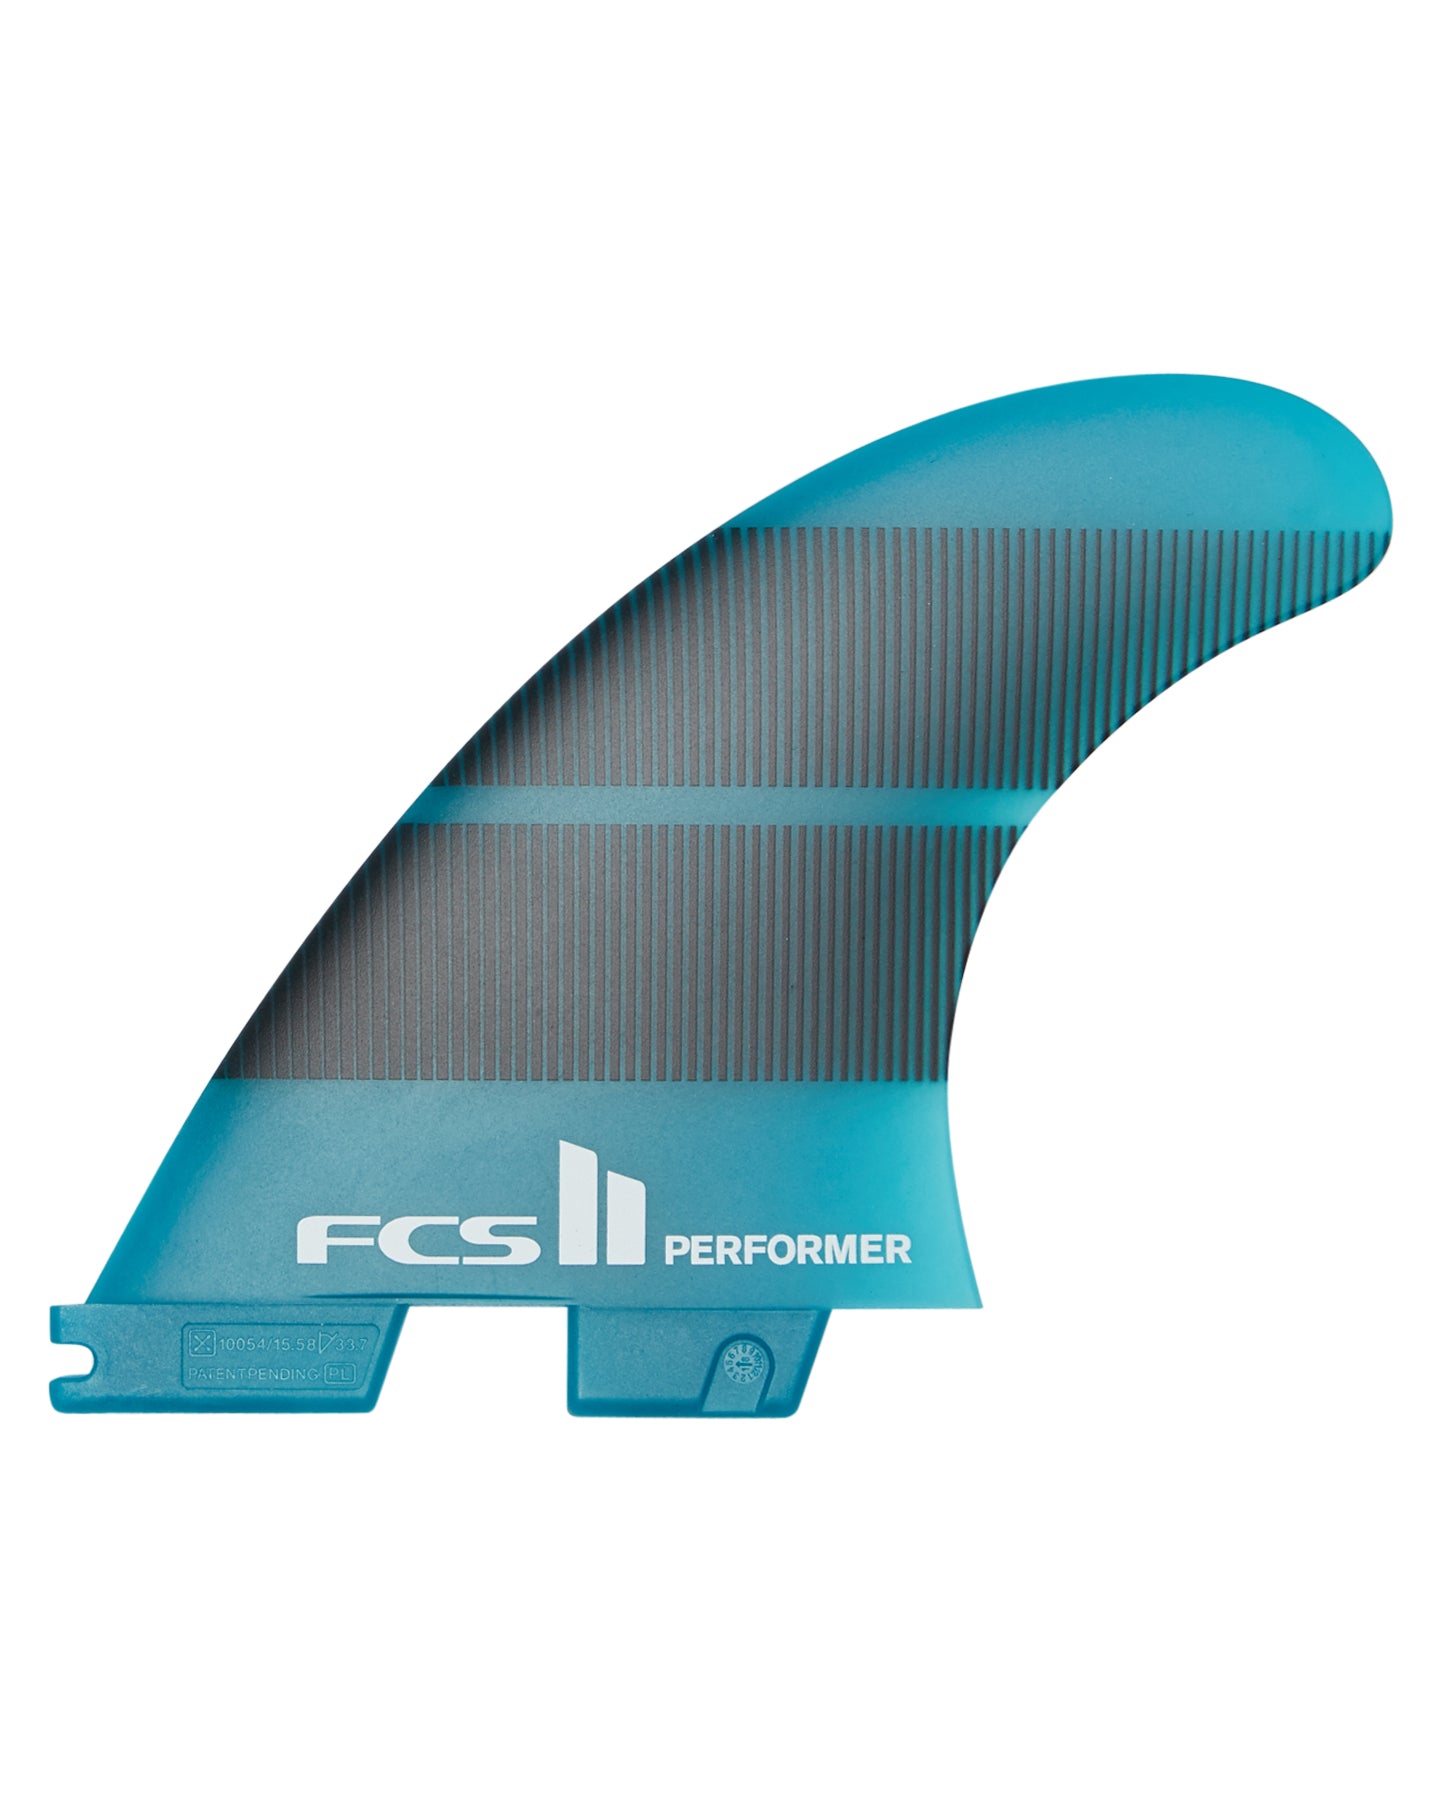 FCS 2 Performer Neo Glass Tri-Fin Set Teal Gradient L